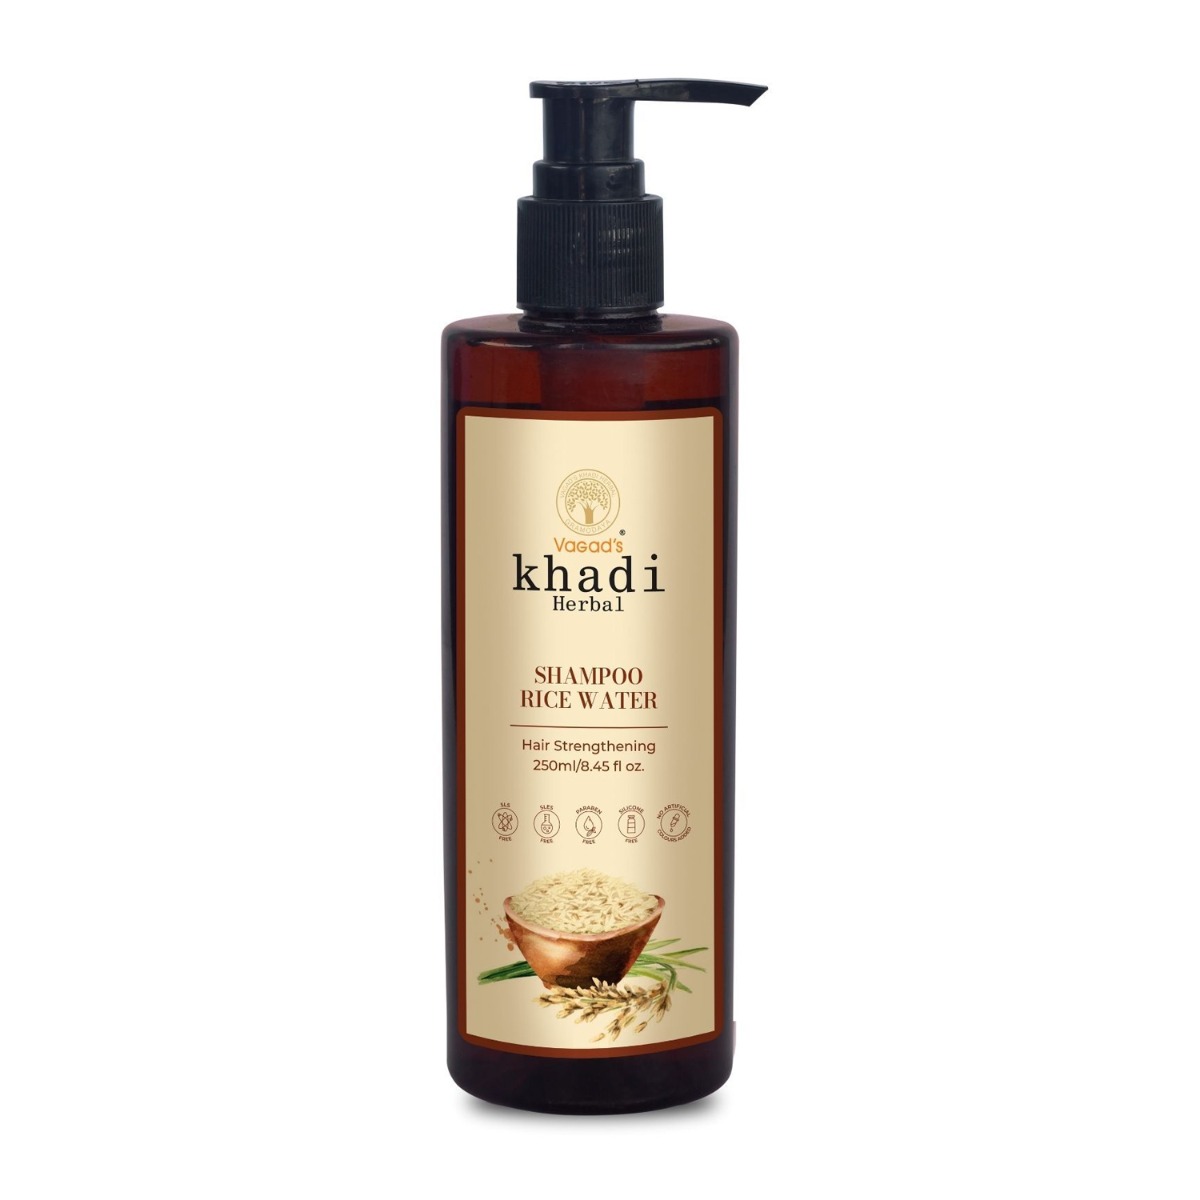 Vagad's Khadi Rice Water Sls Free Shampoo, 250ml